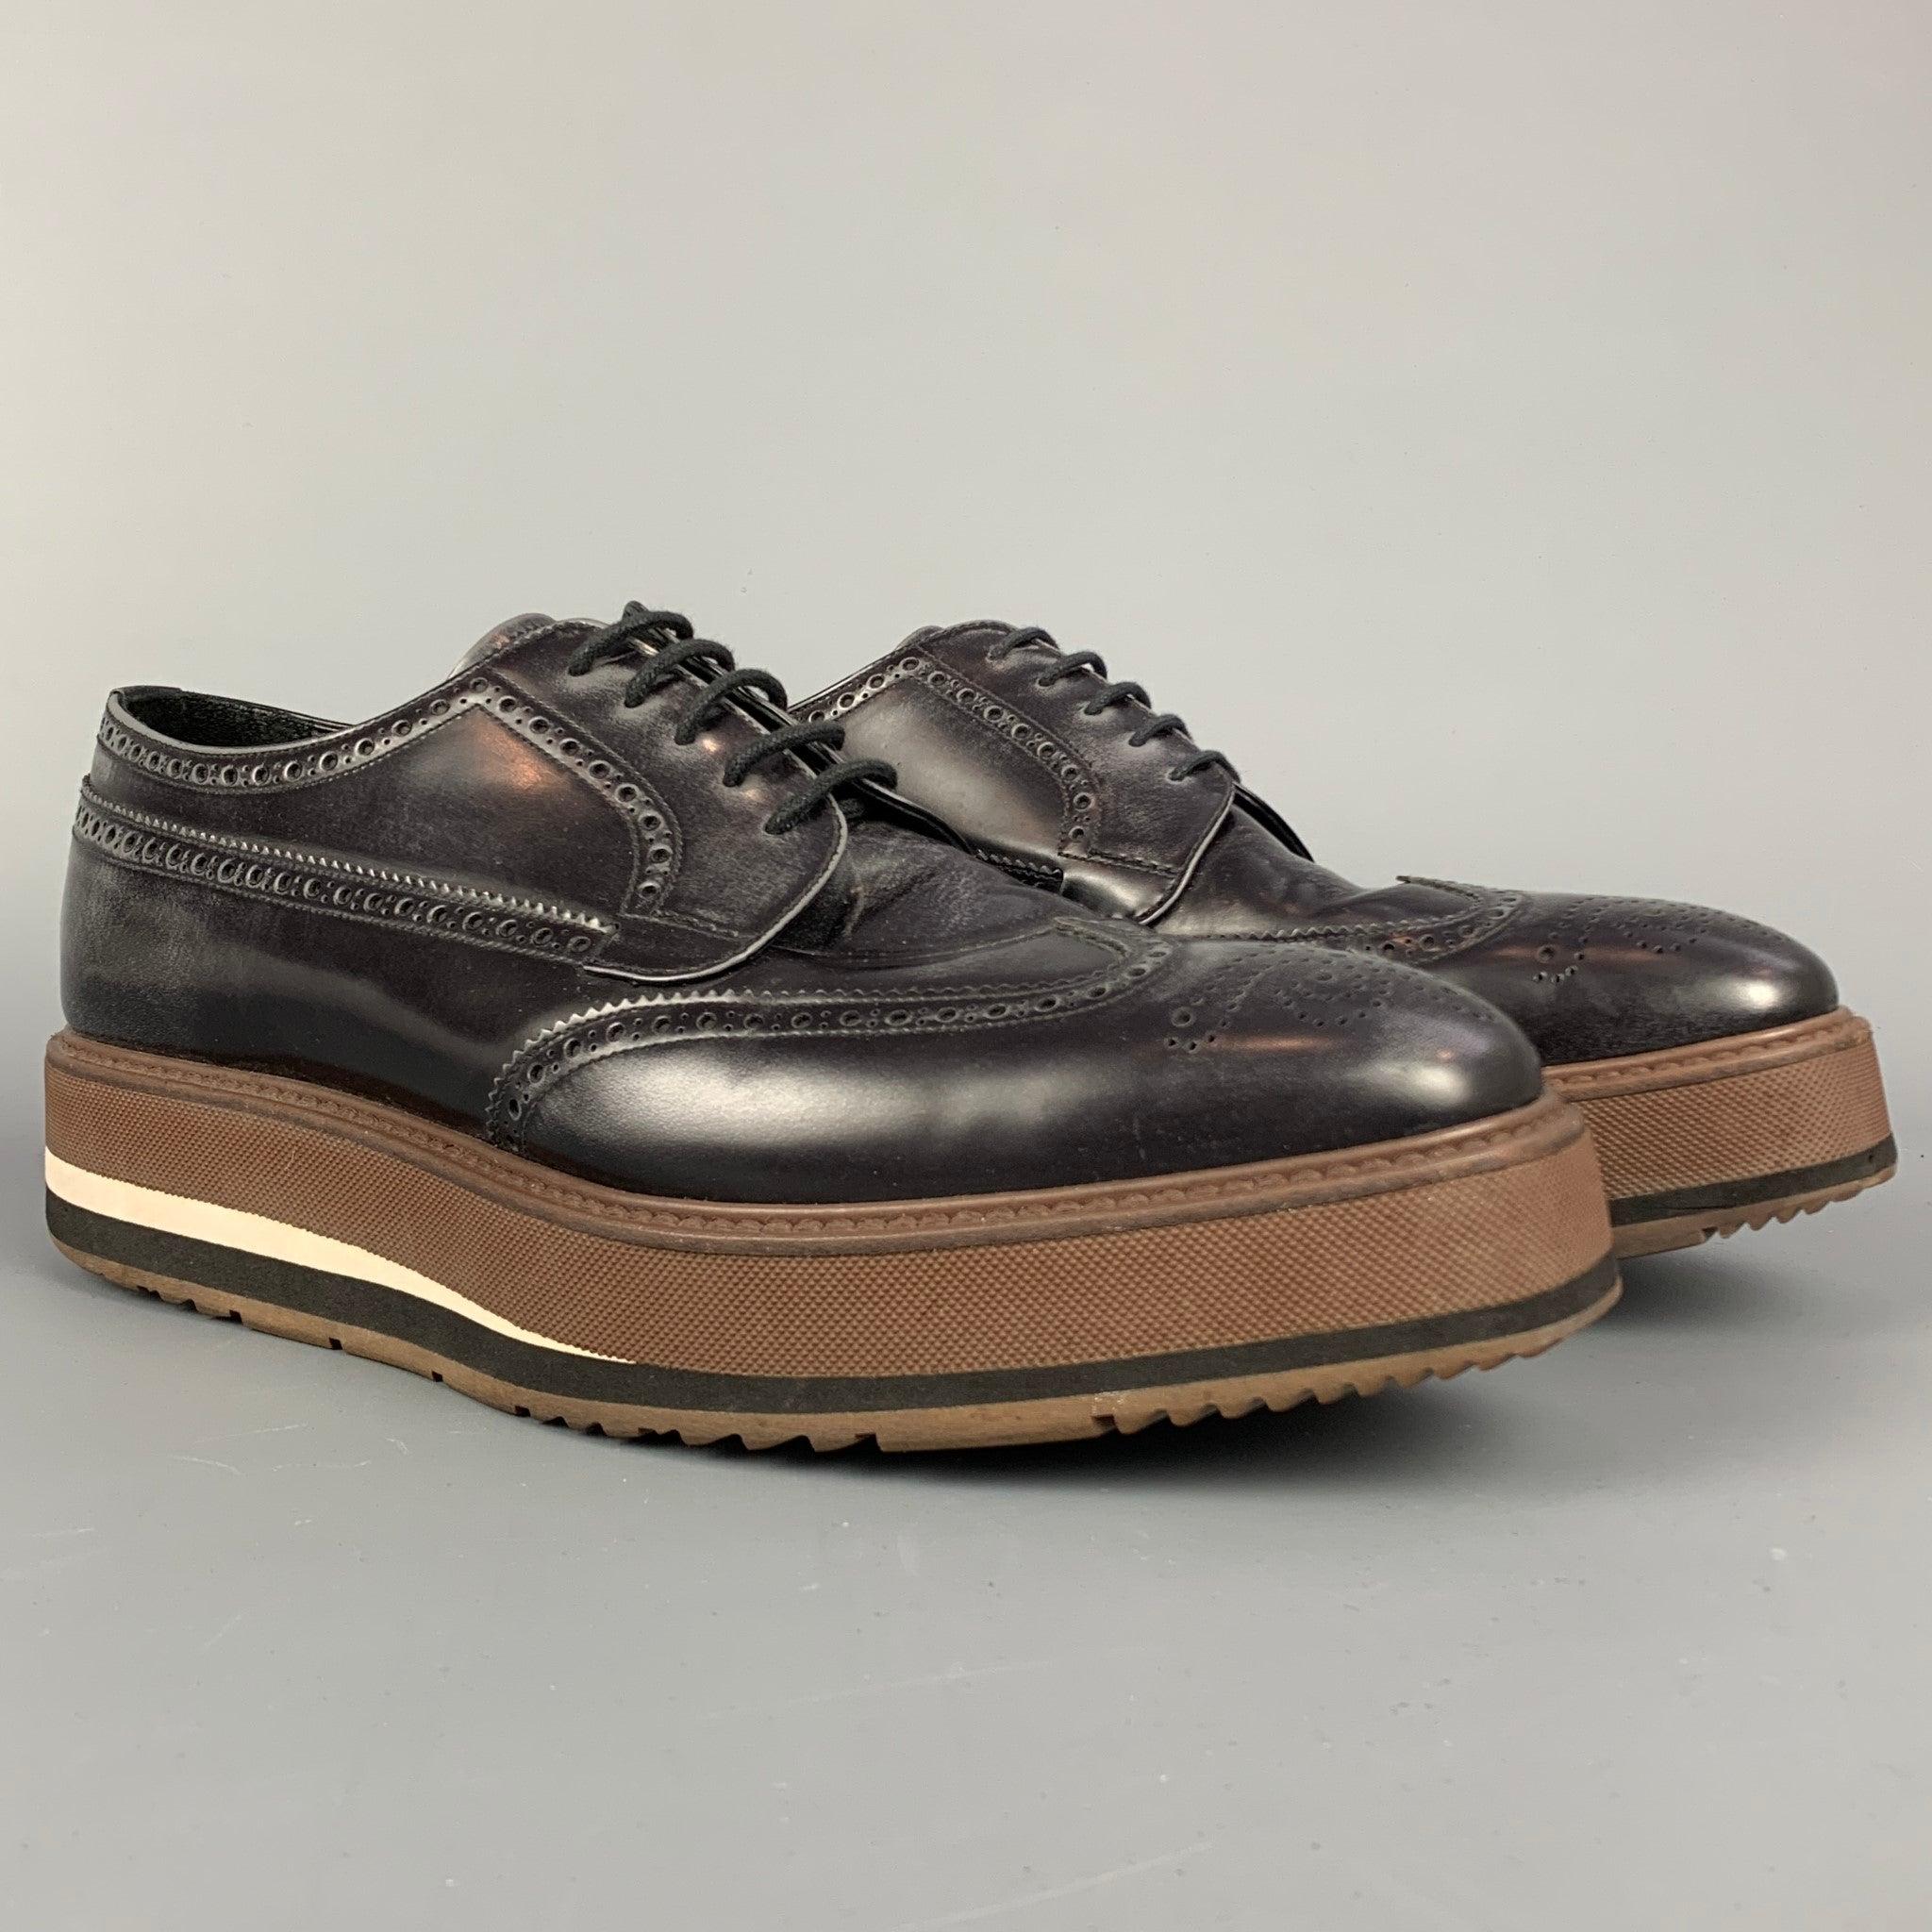 Les chaussures PRADA sont réalisées en cuir perforé délavé noir et marron et présentent un bout carré, une plateforme, une semelle en caoutchouc et une fermeture à lacets. Fabriqué en Italie.
Etat d'occasion. 

Marqué :   2EG015 9.5 Semelle